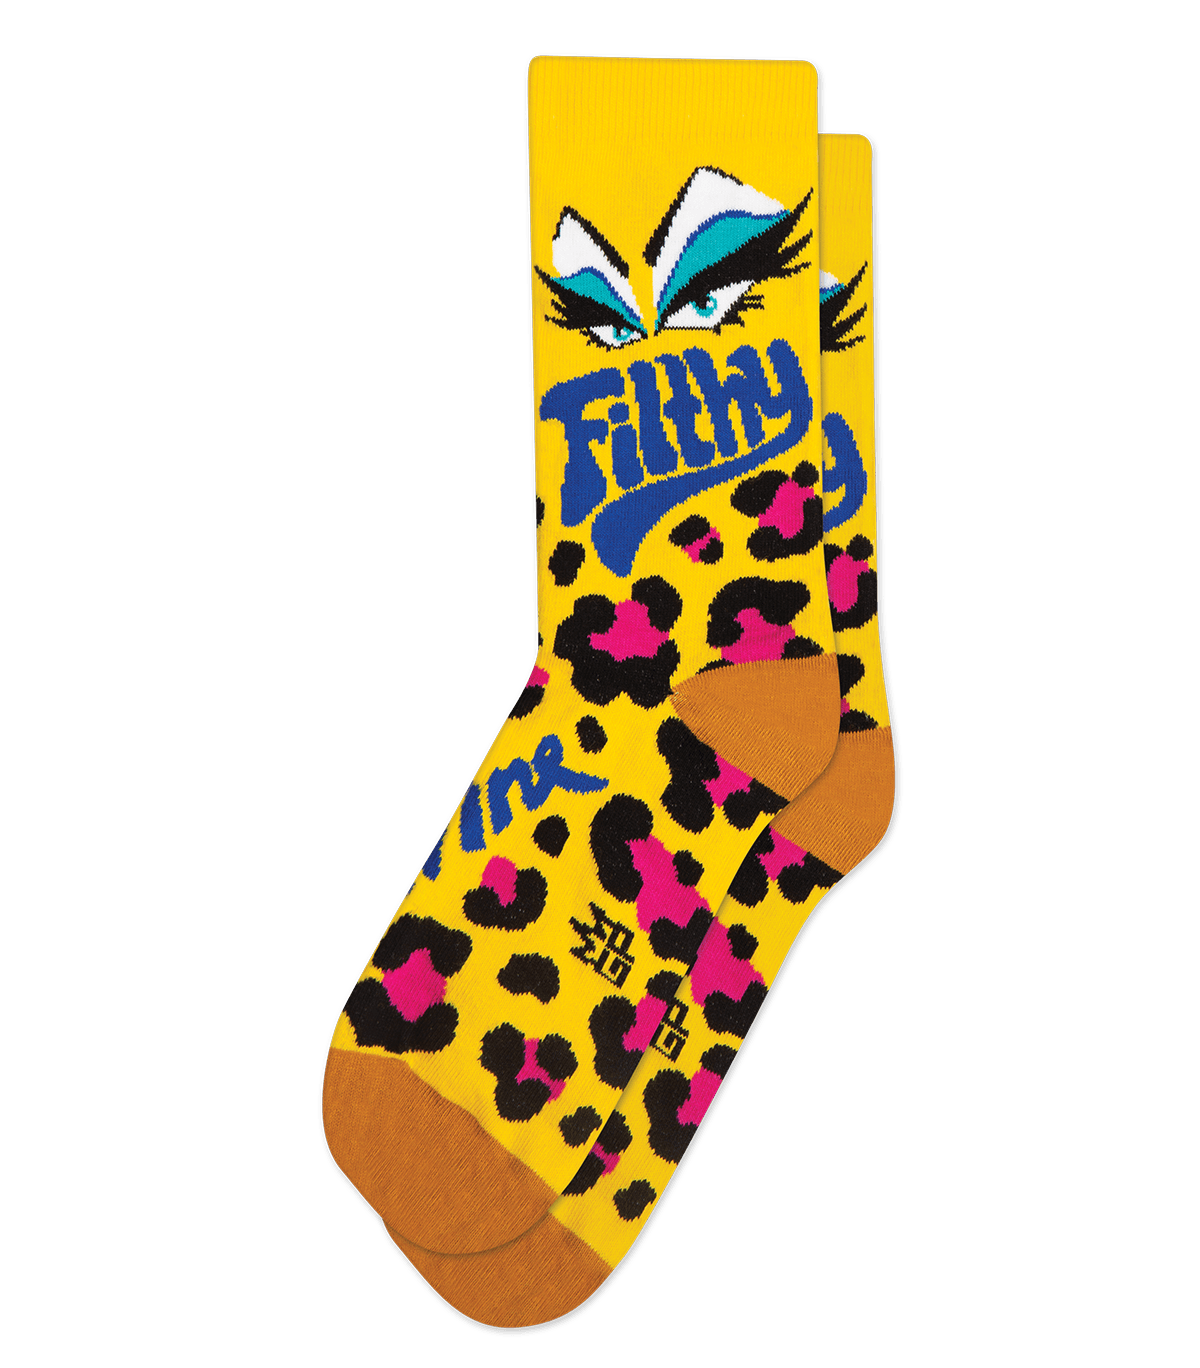 Mulga X American Socks - 'Shark Beard Shane' Socks – Mulga The Artist